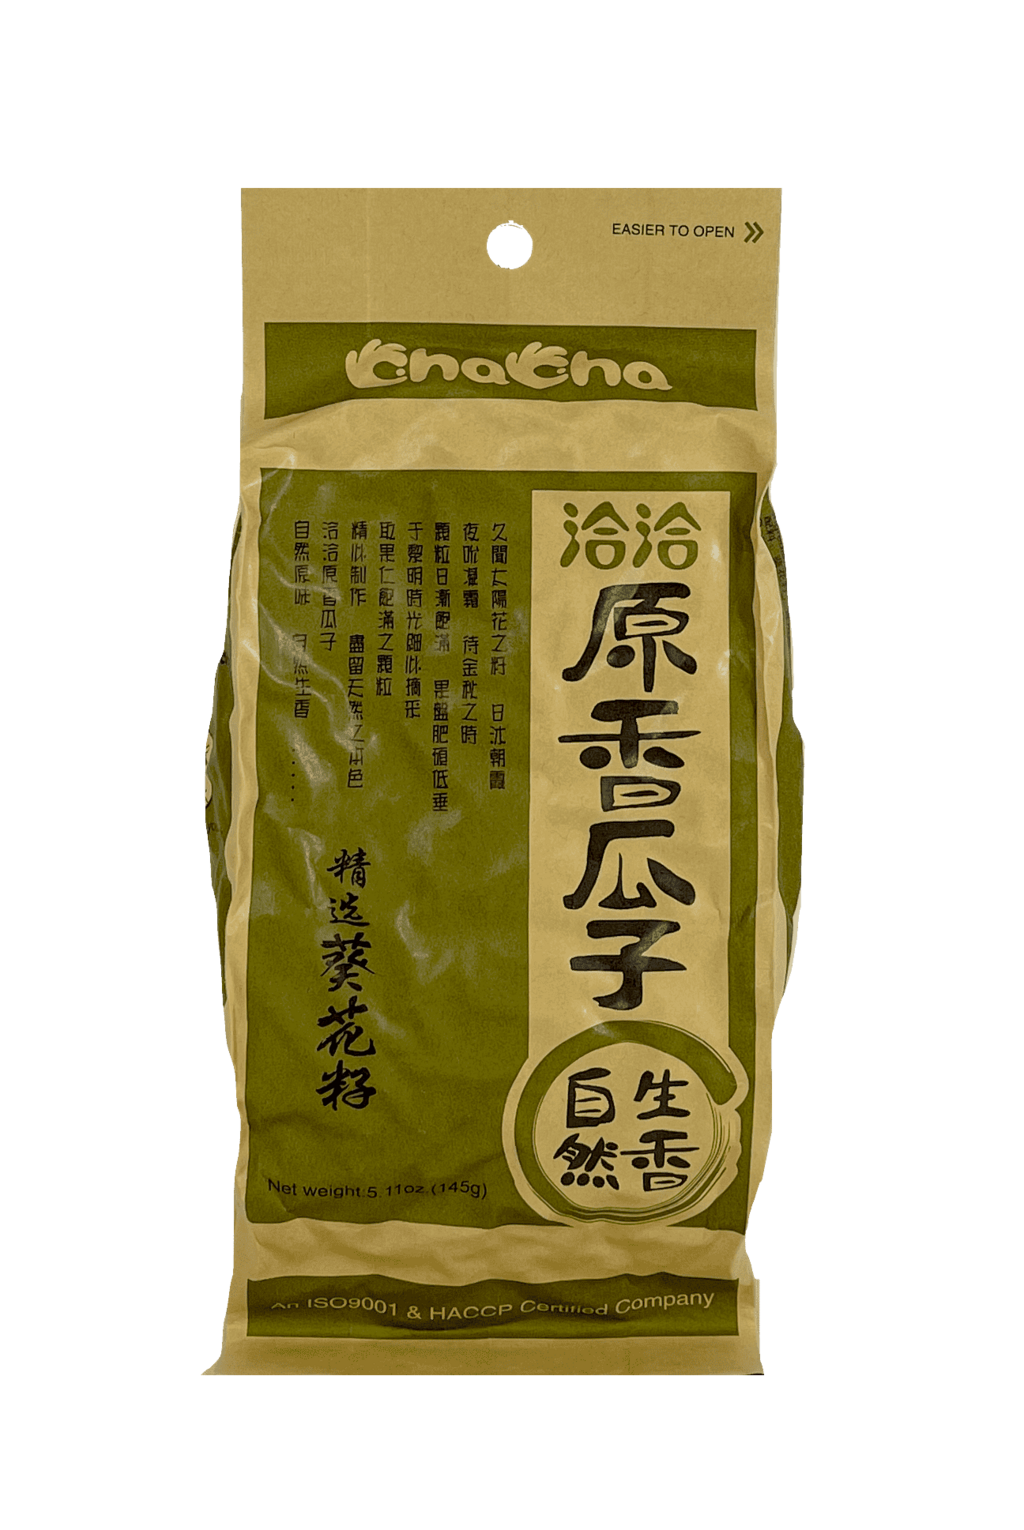 nflower Seeds Original 145g Cha Cha China